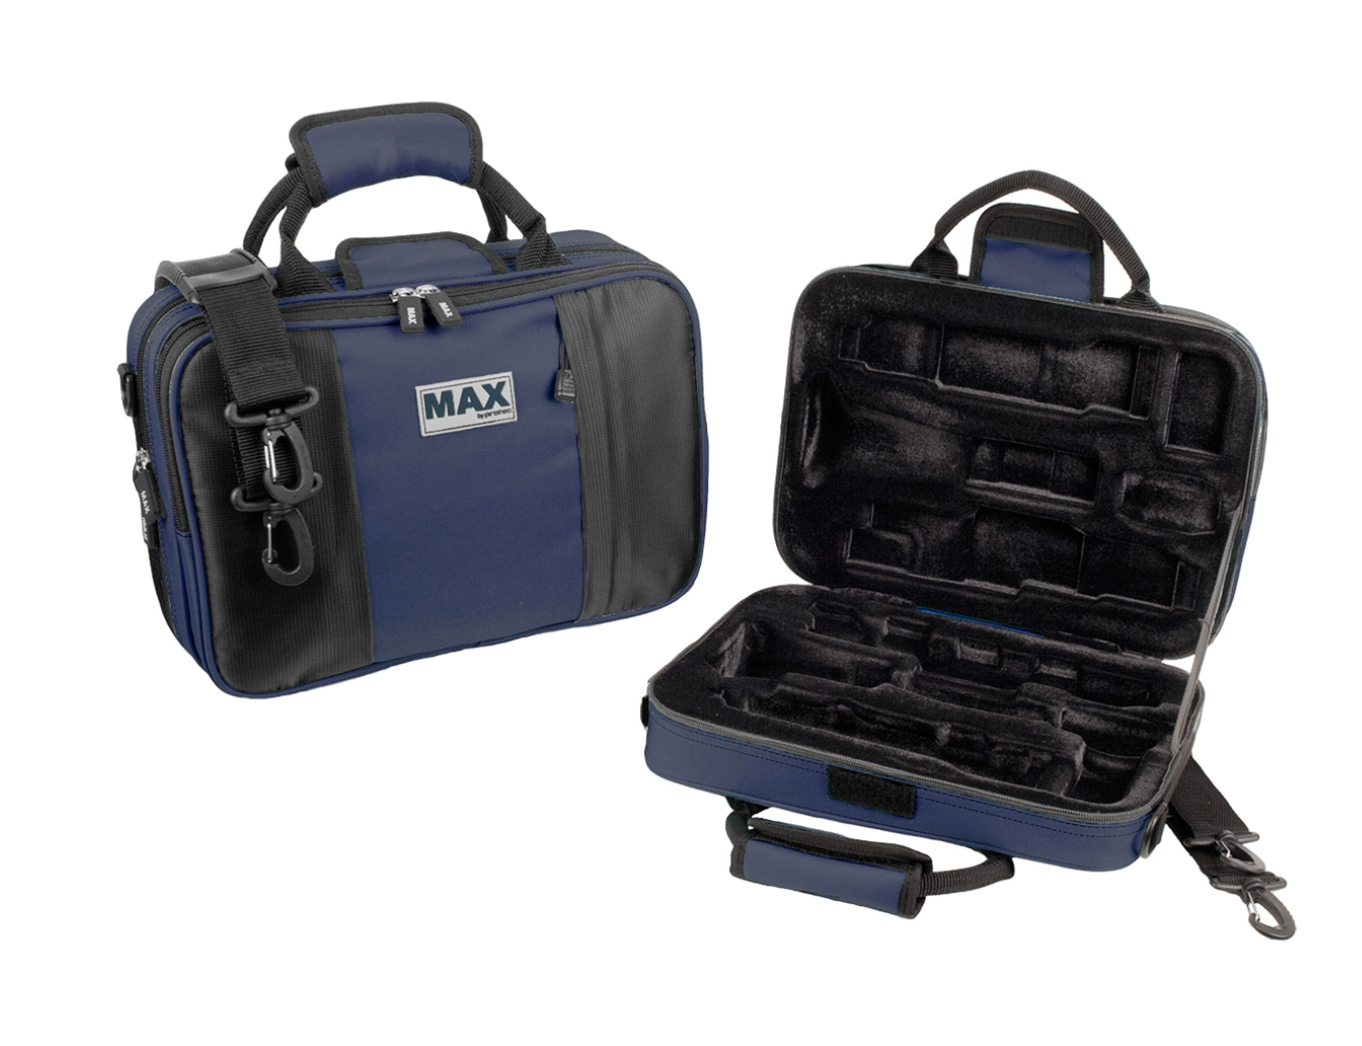 Protec Max Bb Clarinet Cases